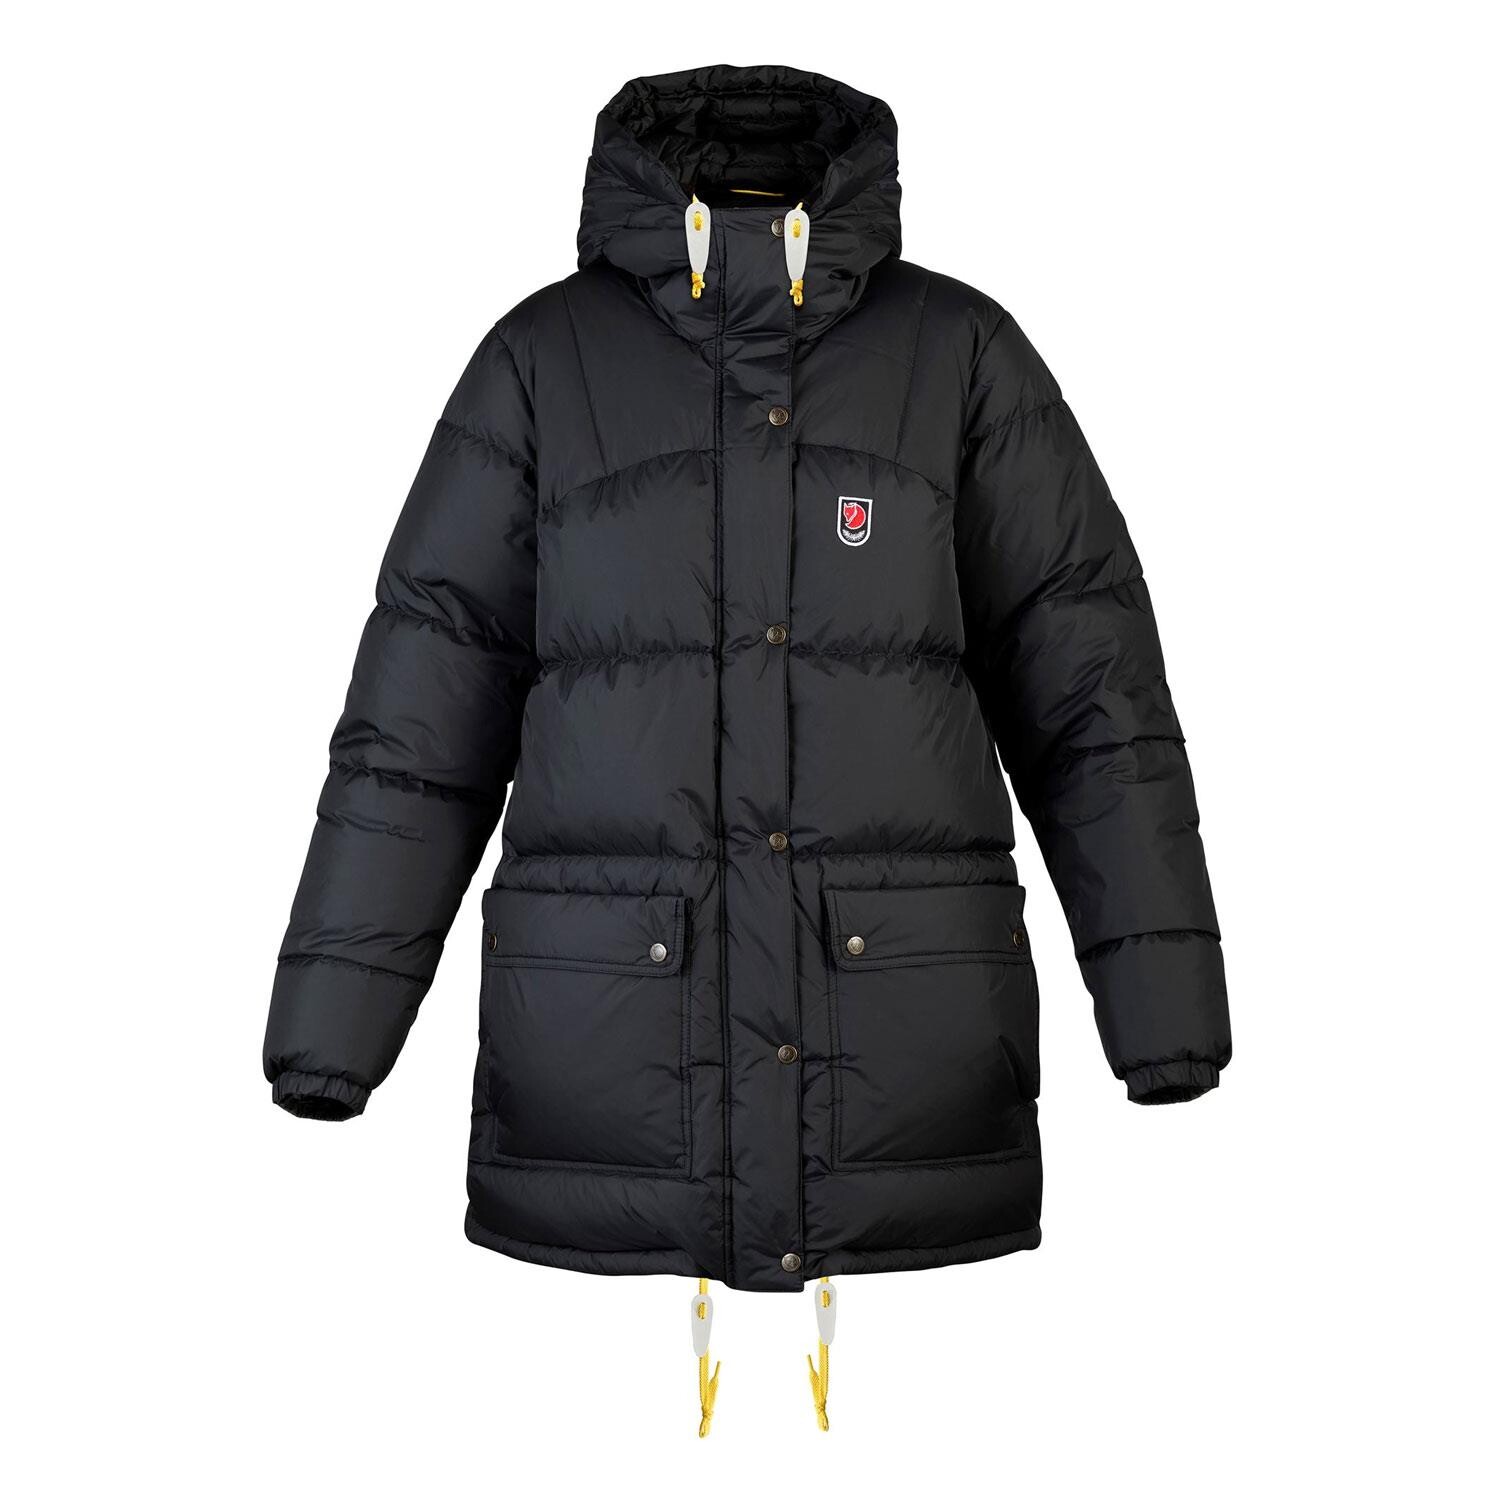 Køb varme jakker til kvinder - varmen med jakker fra Friluftsland